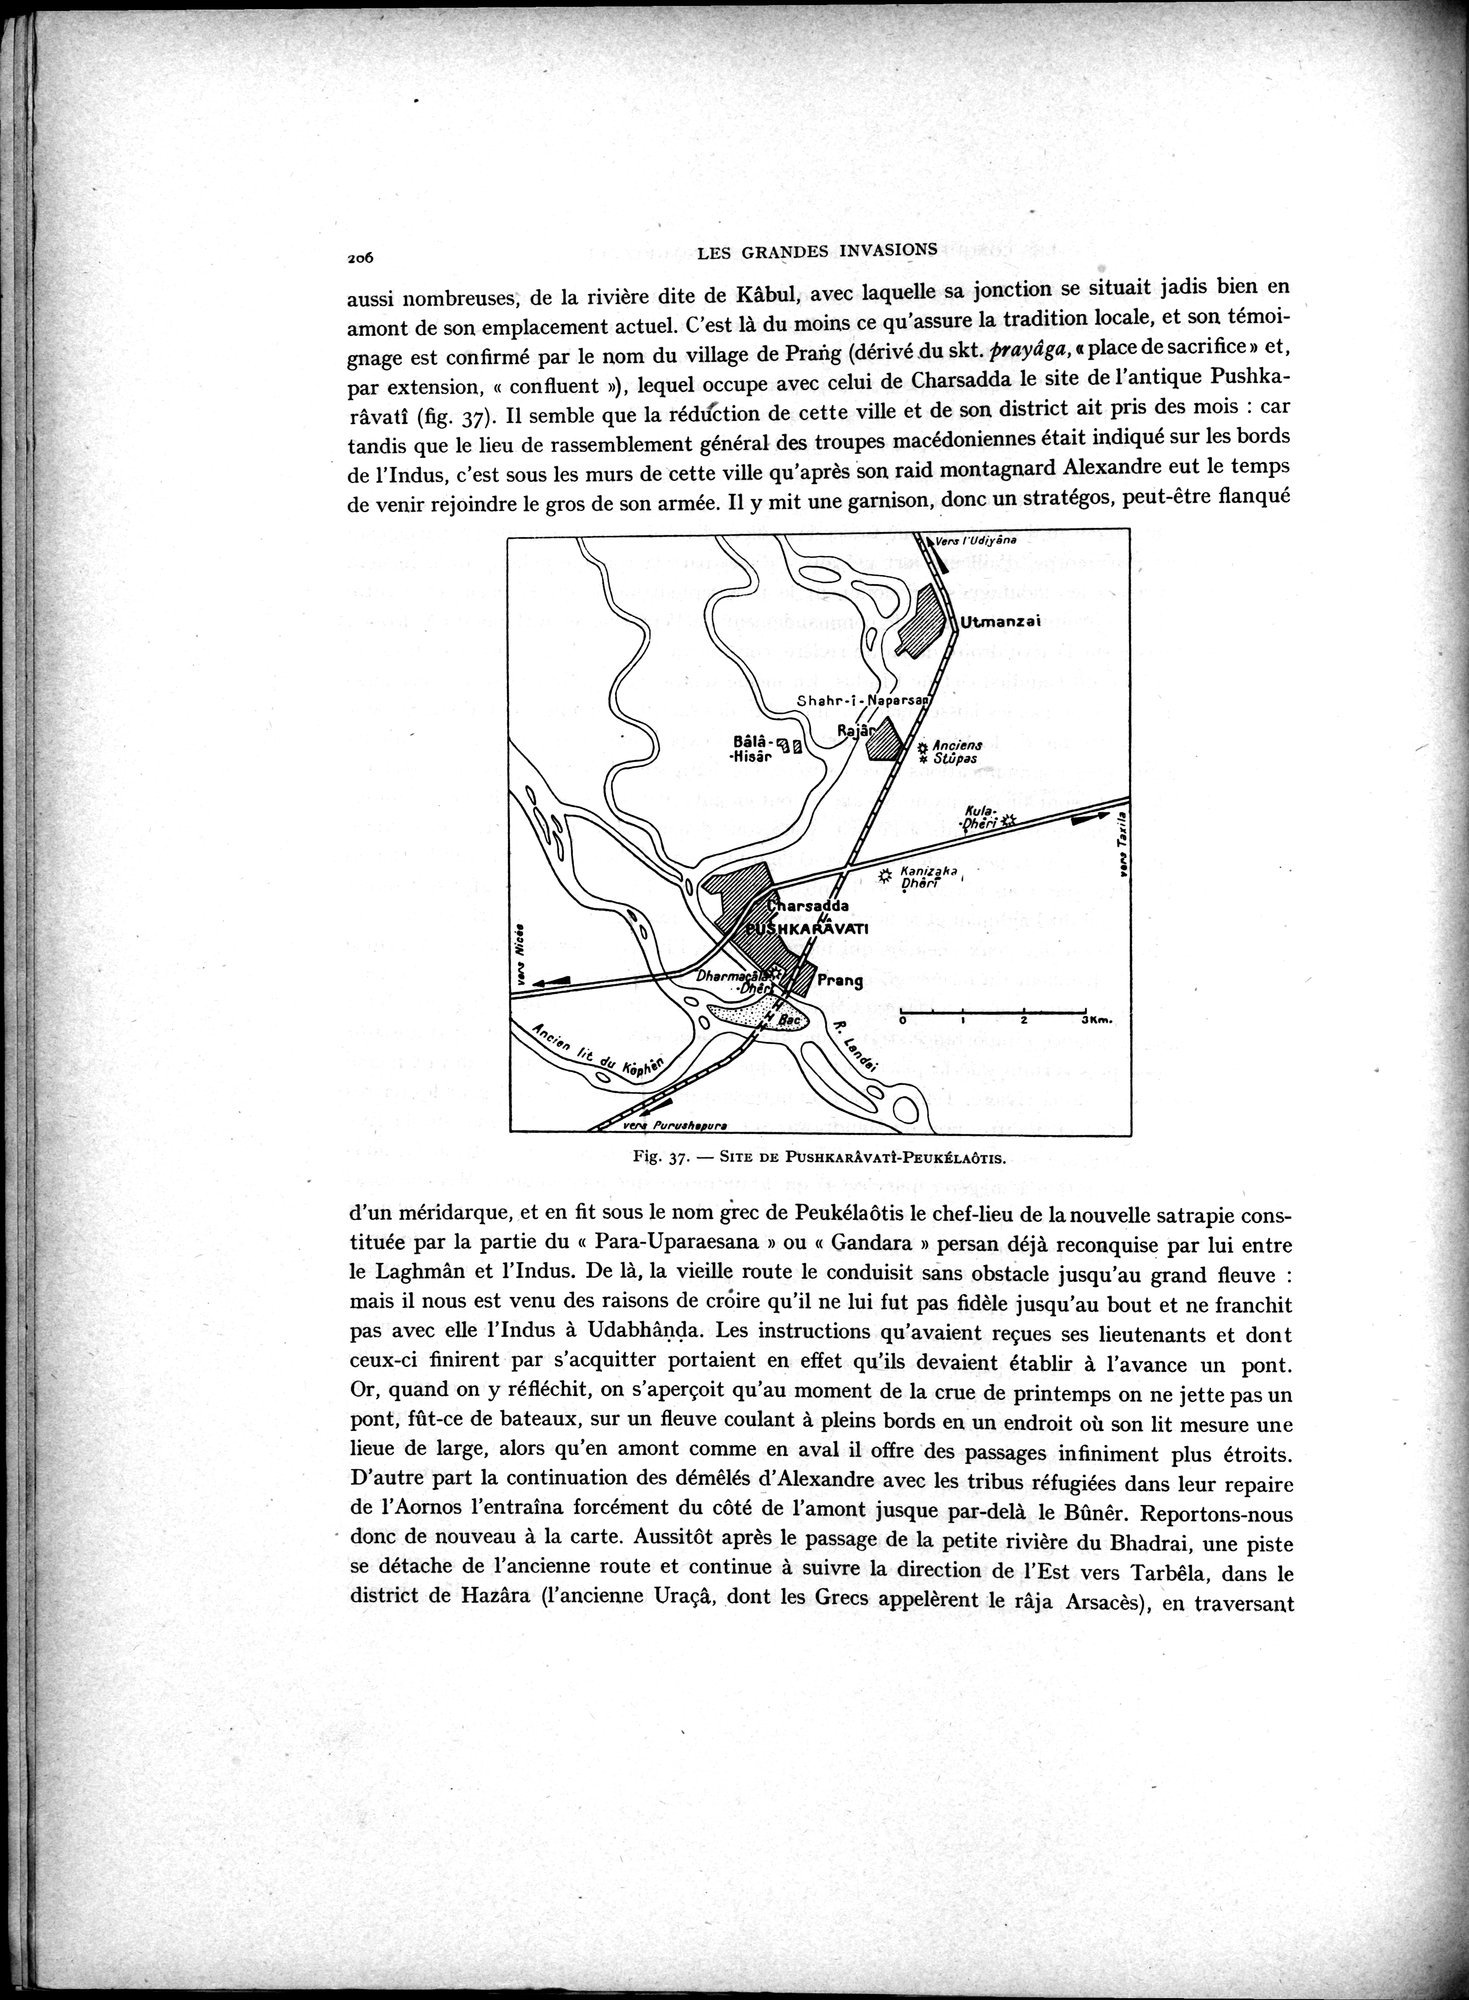 La Vieille Route de l'Inde de Bactres à Taxila : vol.2 / Page 40 (Grayscale High Resolution Image)